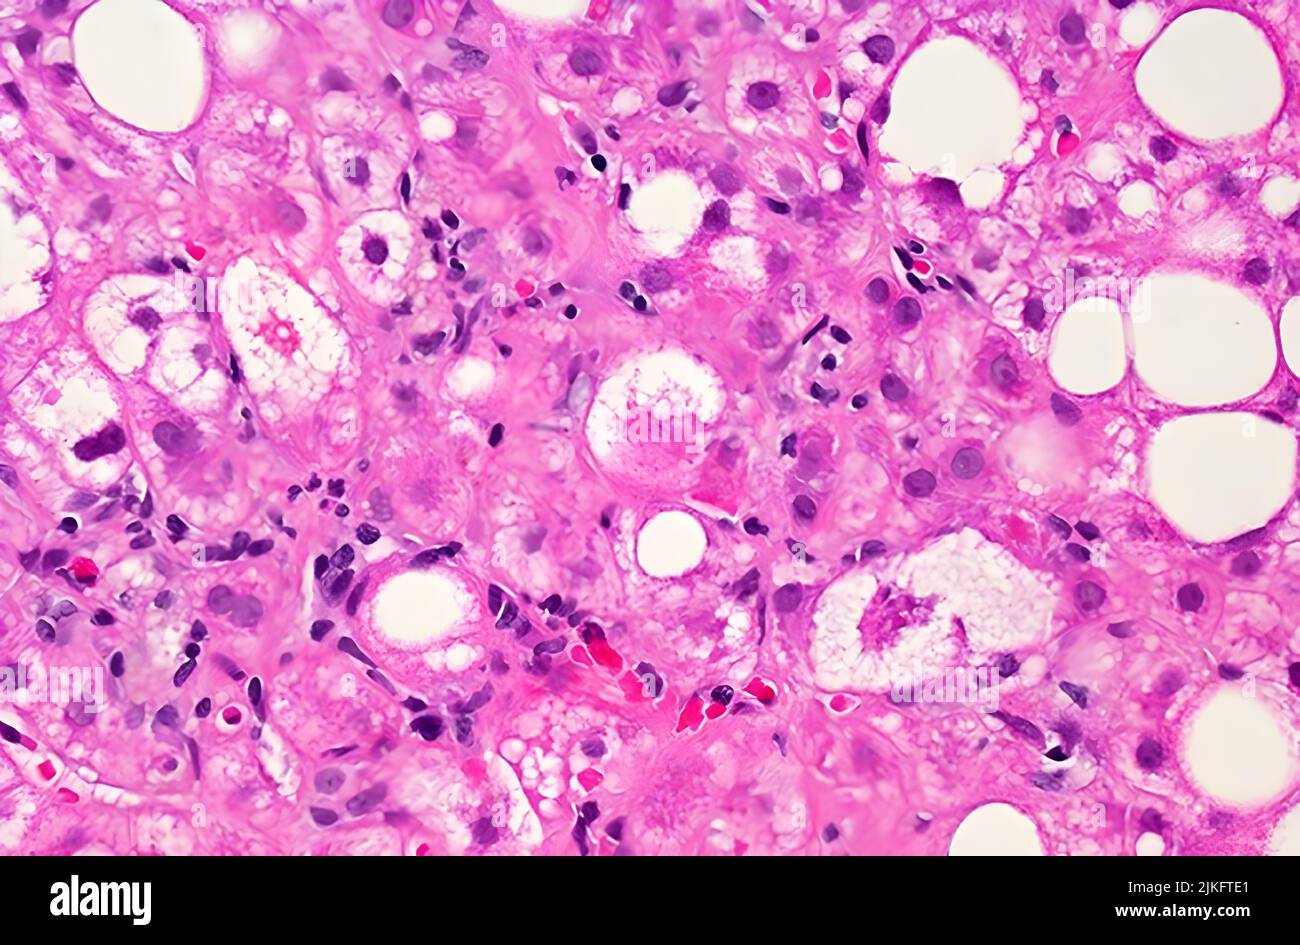 Imagen microscópica del tejido hepático afectado por la enfermedad del hígado graso no alcohólica (EHGNA). Las manchas blancas grandes y pequeñas son gotas de grasa en exceso Foto de stock